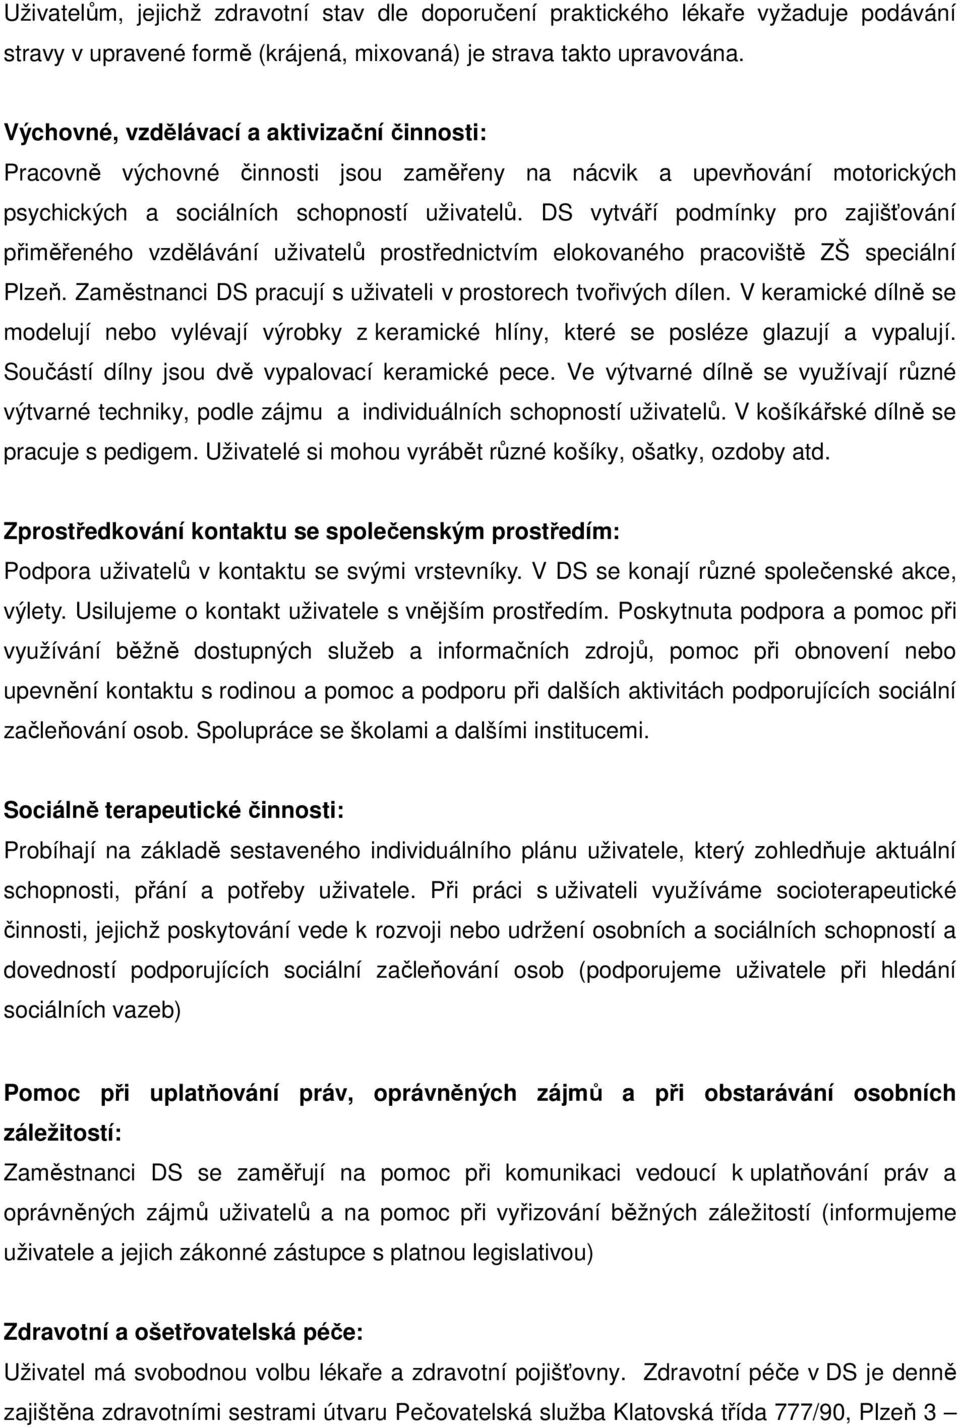 Denní stacionář Jitřenka, Zábělská 5/43, Plzeň 4 Doubravka, Plzeň - PDF  Free Download